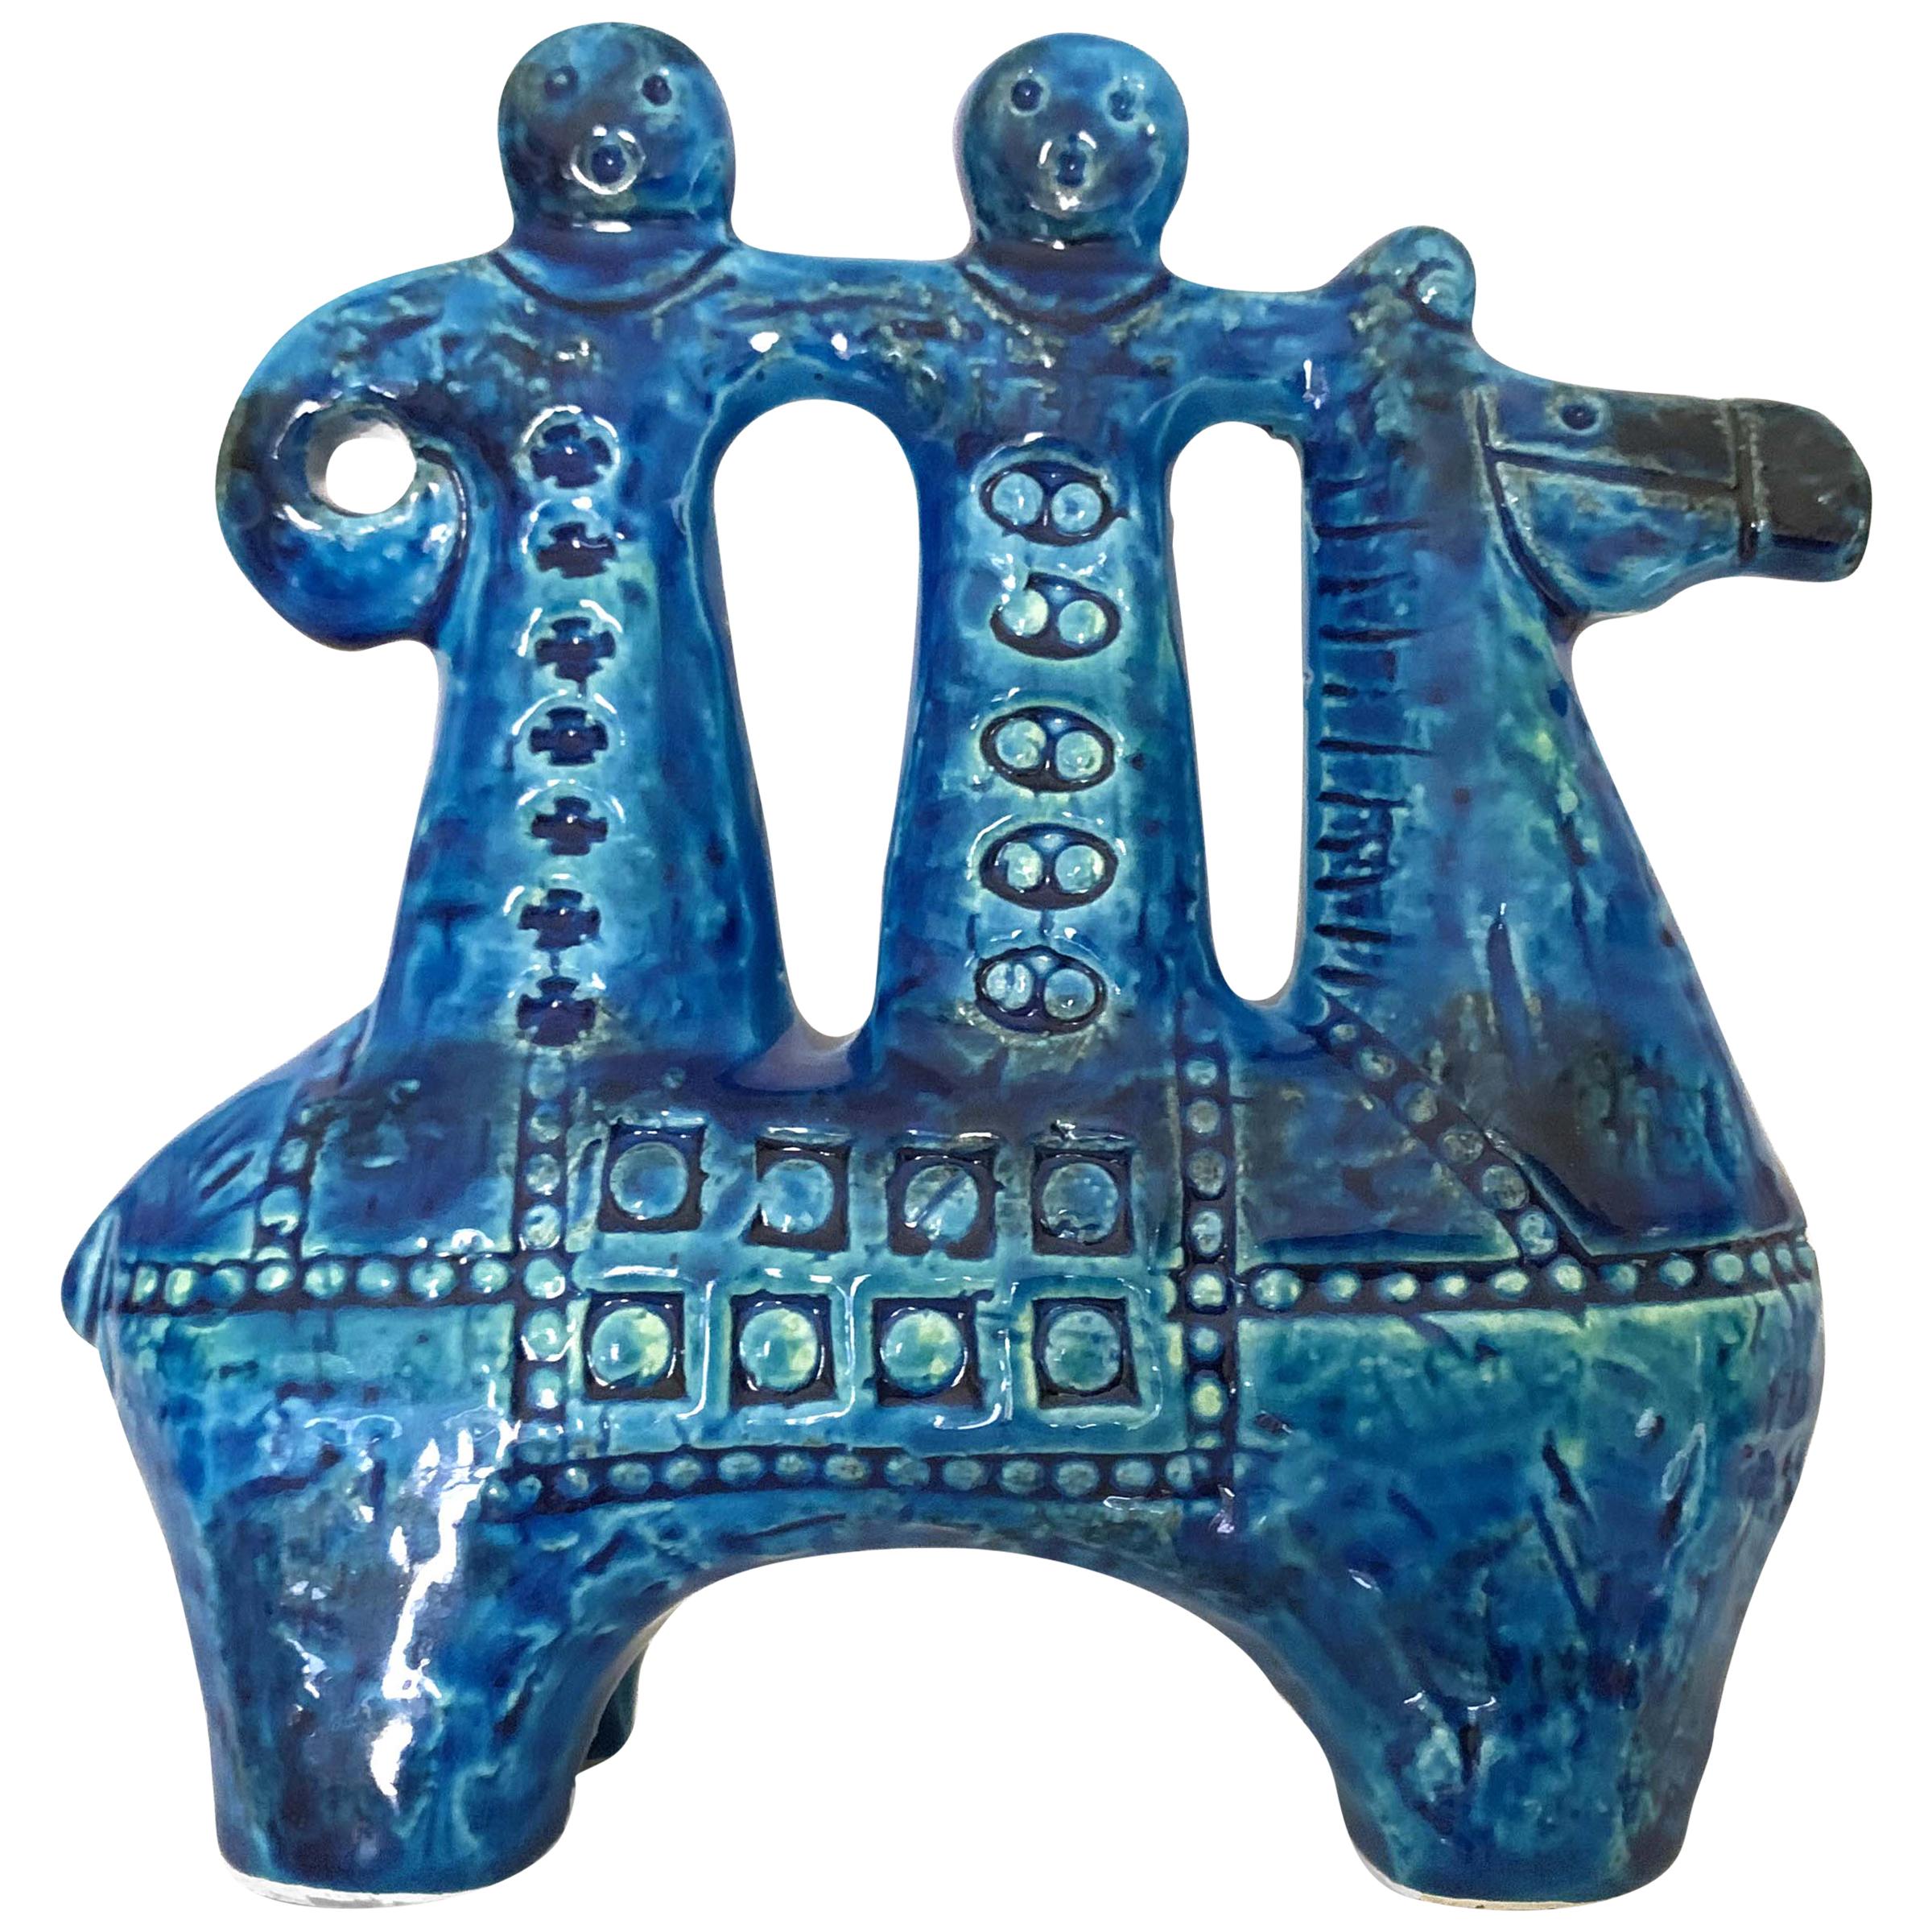 Aldo Londi for Bitossi Rimini Blue Figurine, Horse, Rider, Cavallerizzo Pottery